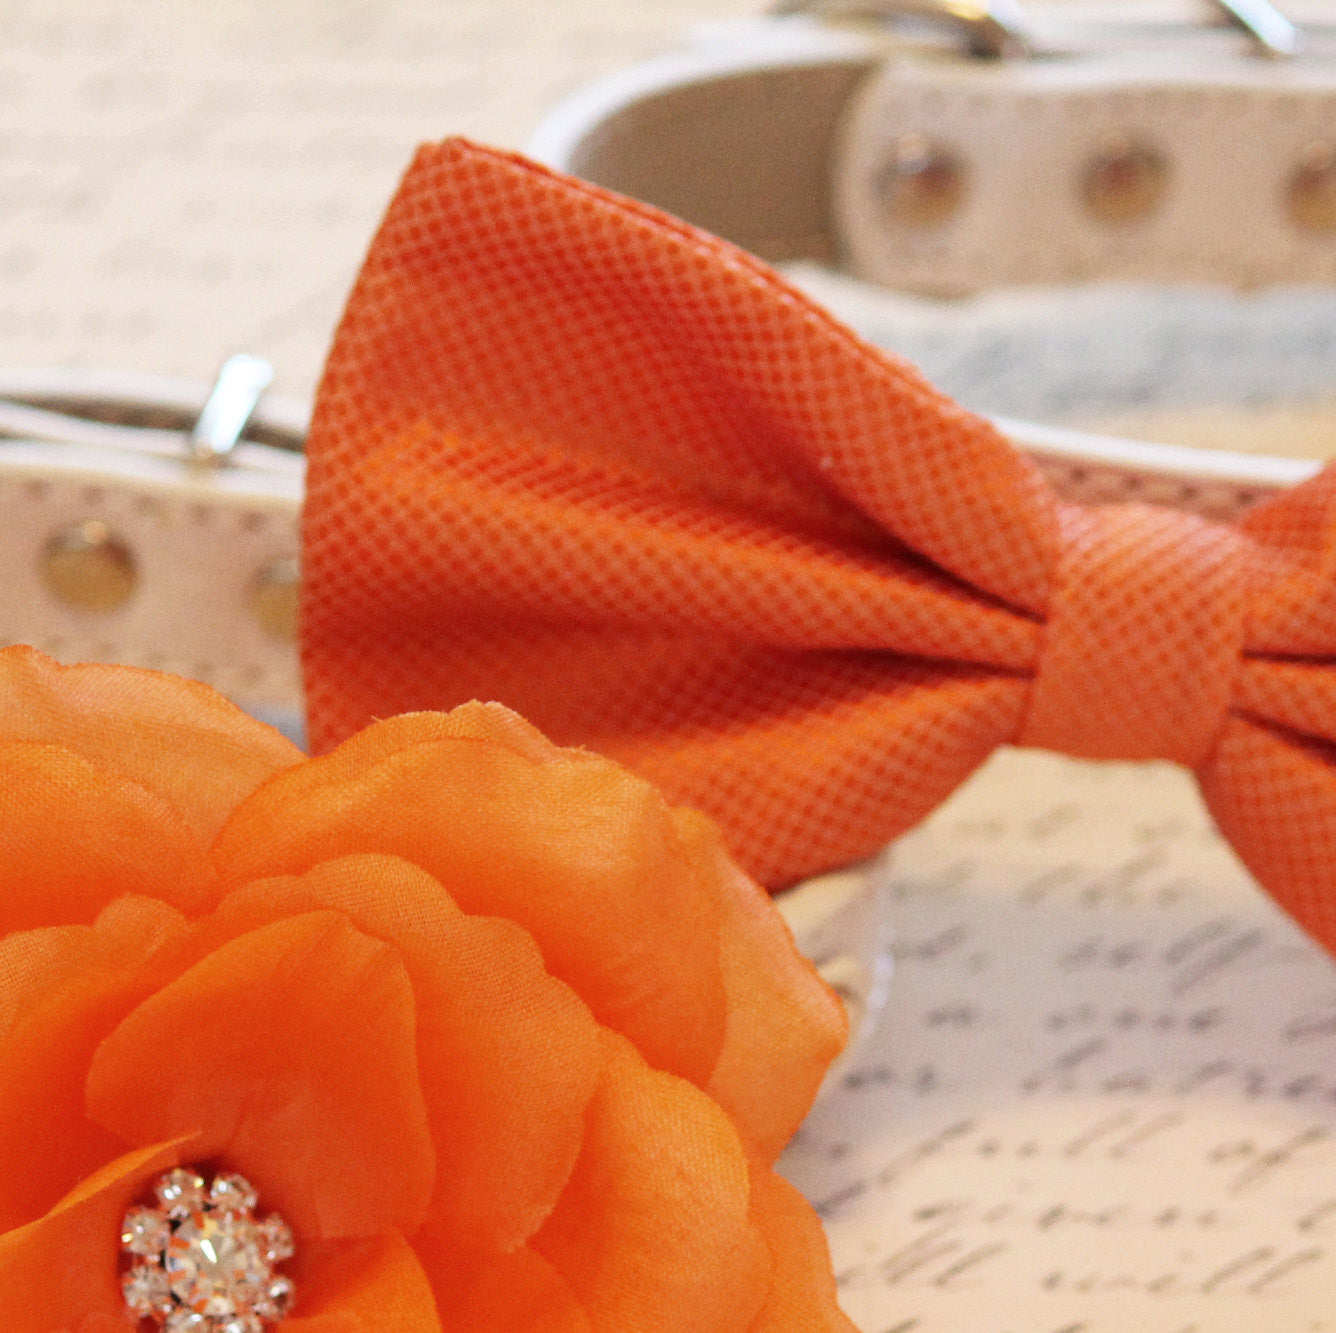 Orange Wedding Dog Collars -Two Spring Wedding Dog Collars, Orange dog bowtie and Floral Dog Collar , Wedding dog collar